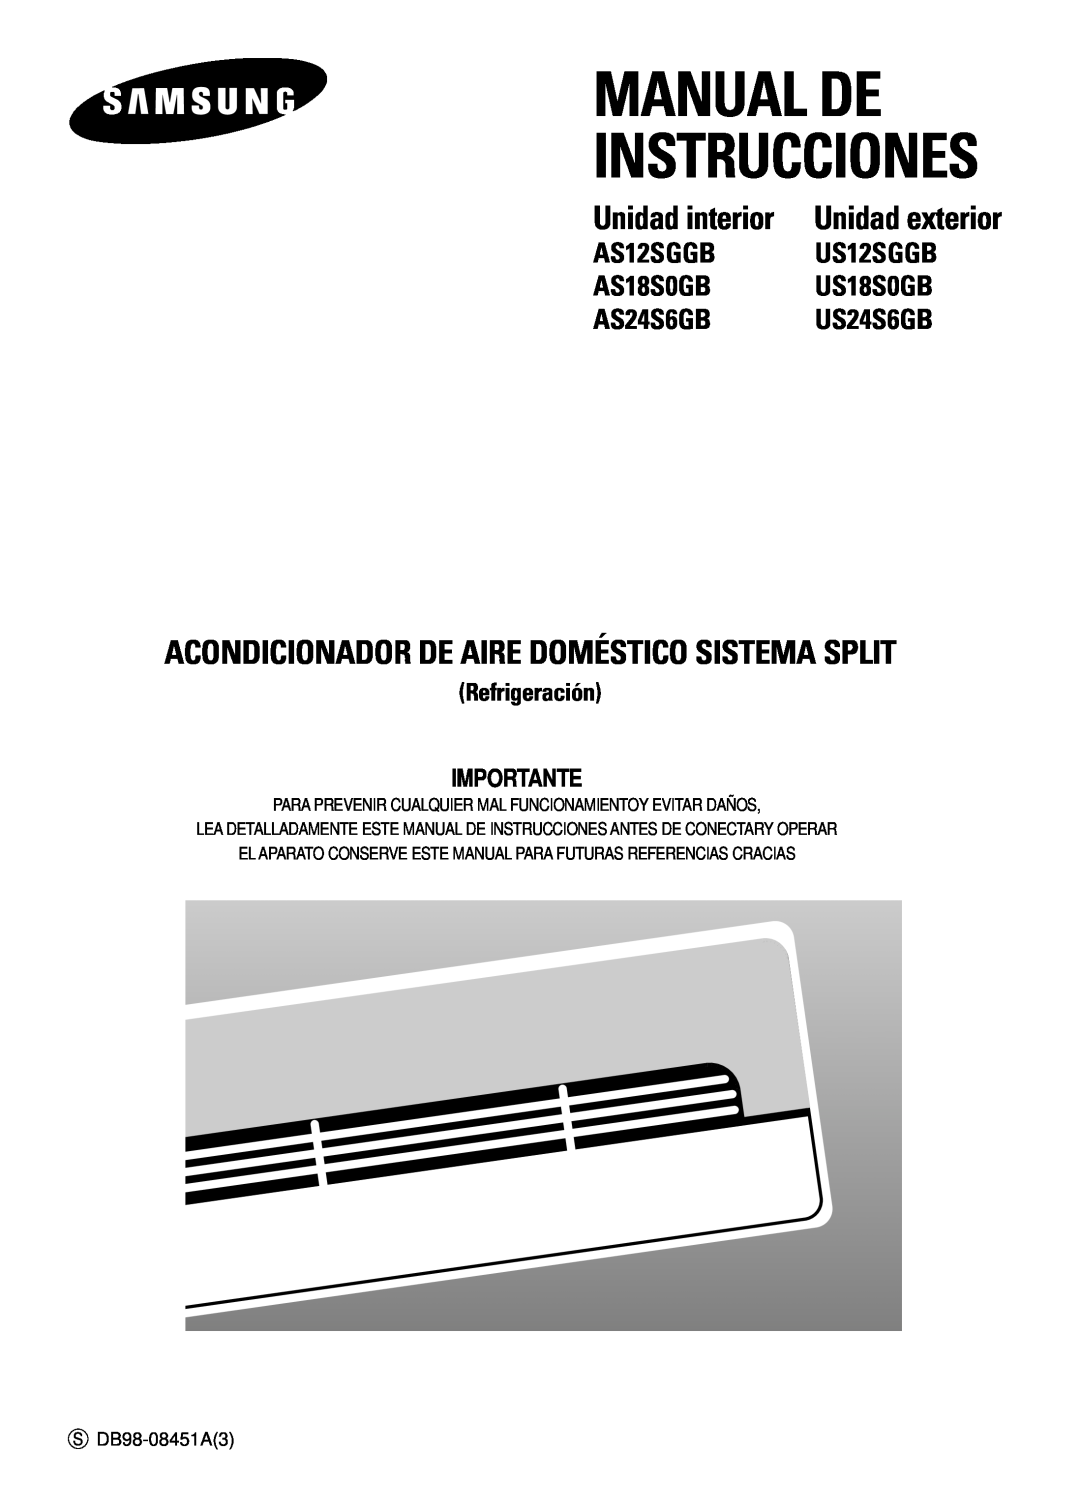 Samsung AS12SGGB manual Manual De Instrucciones, Acondicionador De Aire Doméstico Sistema Split, Unidad interior, US12SGGB 